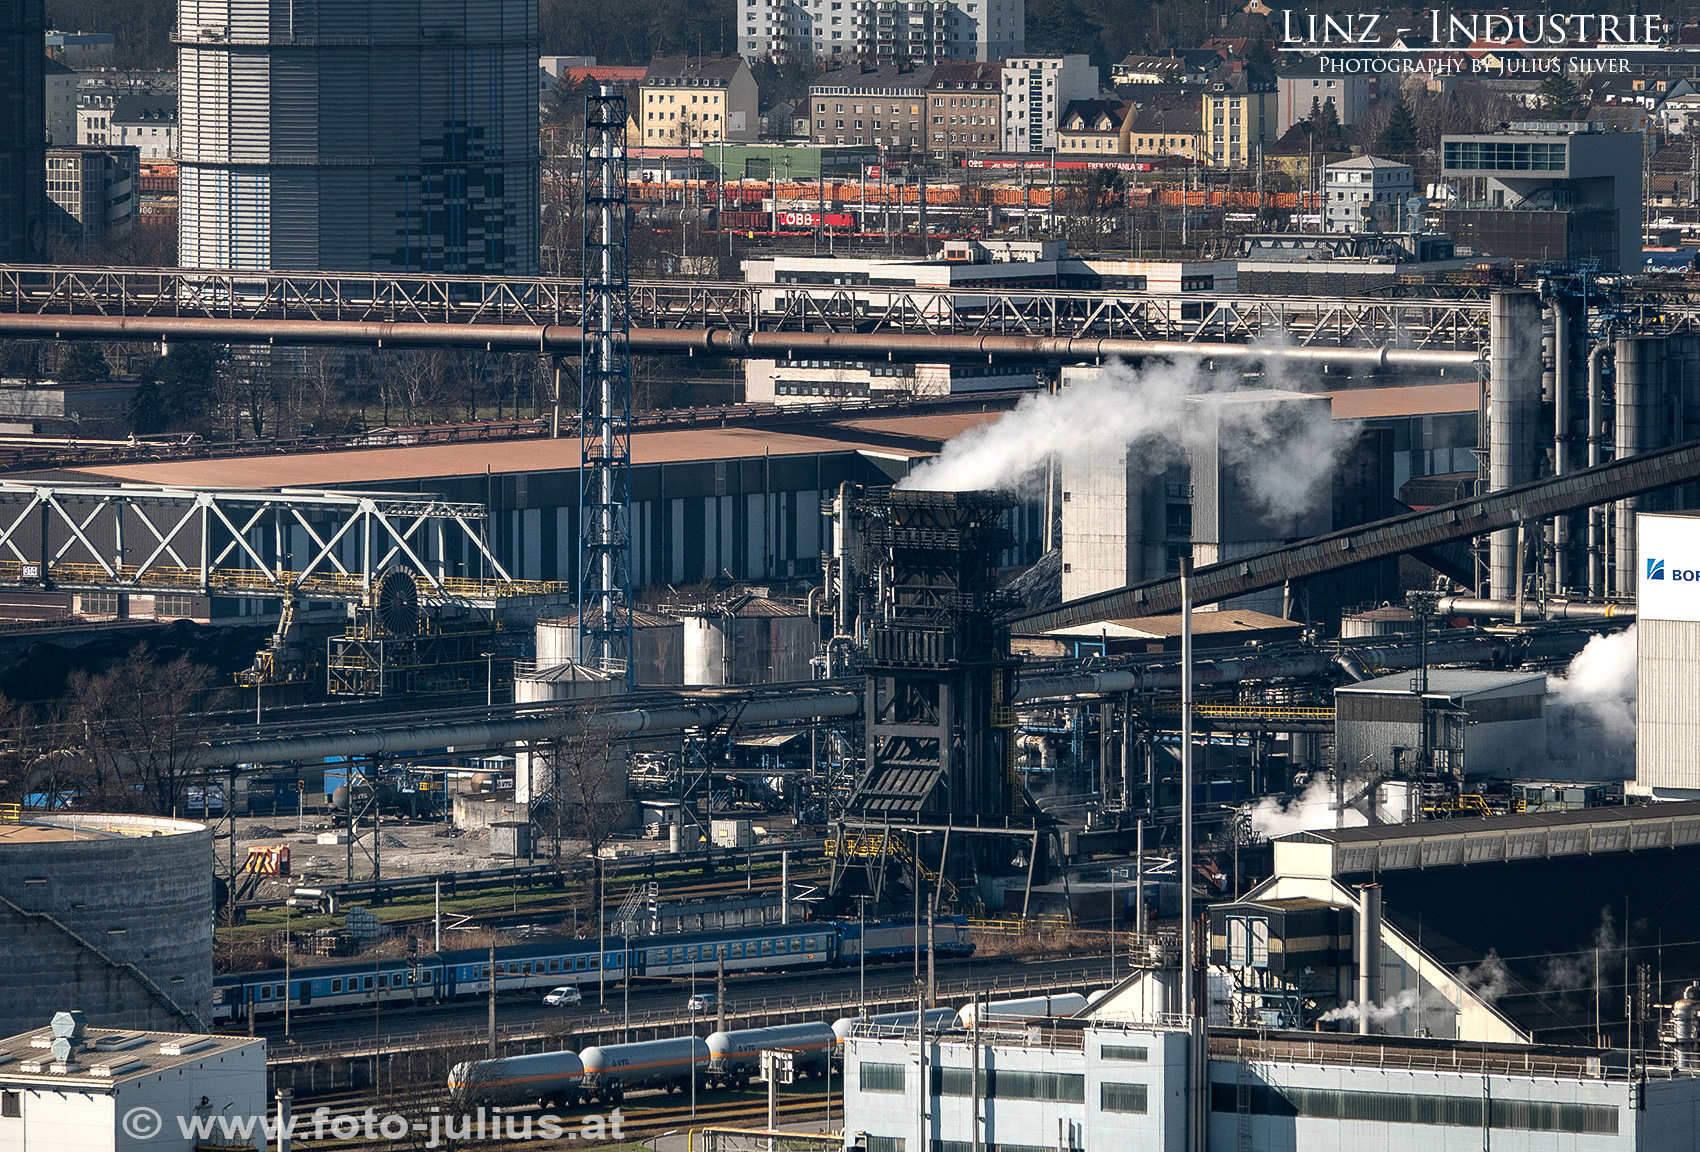 Linz_191a_Industrie.jpg, 1,2MB